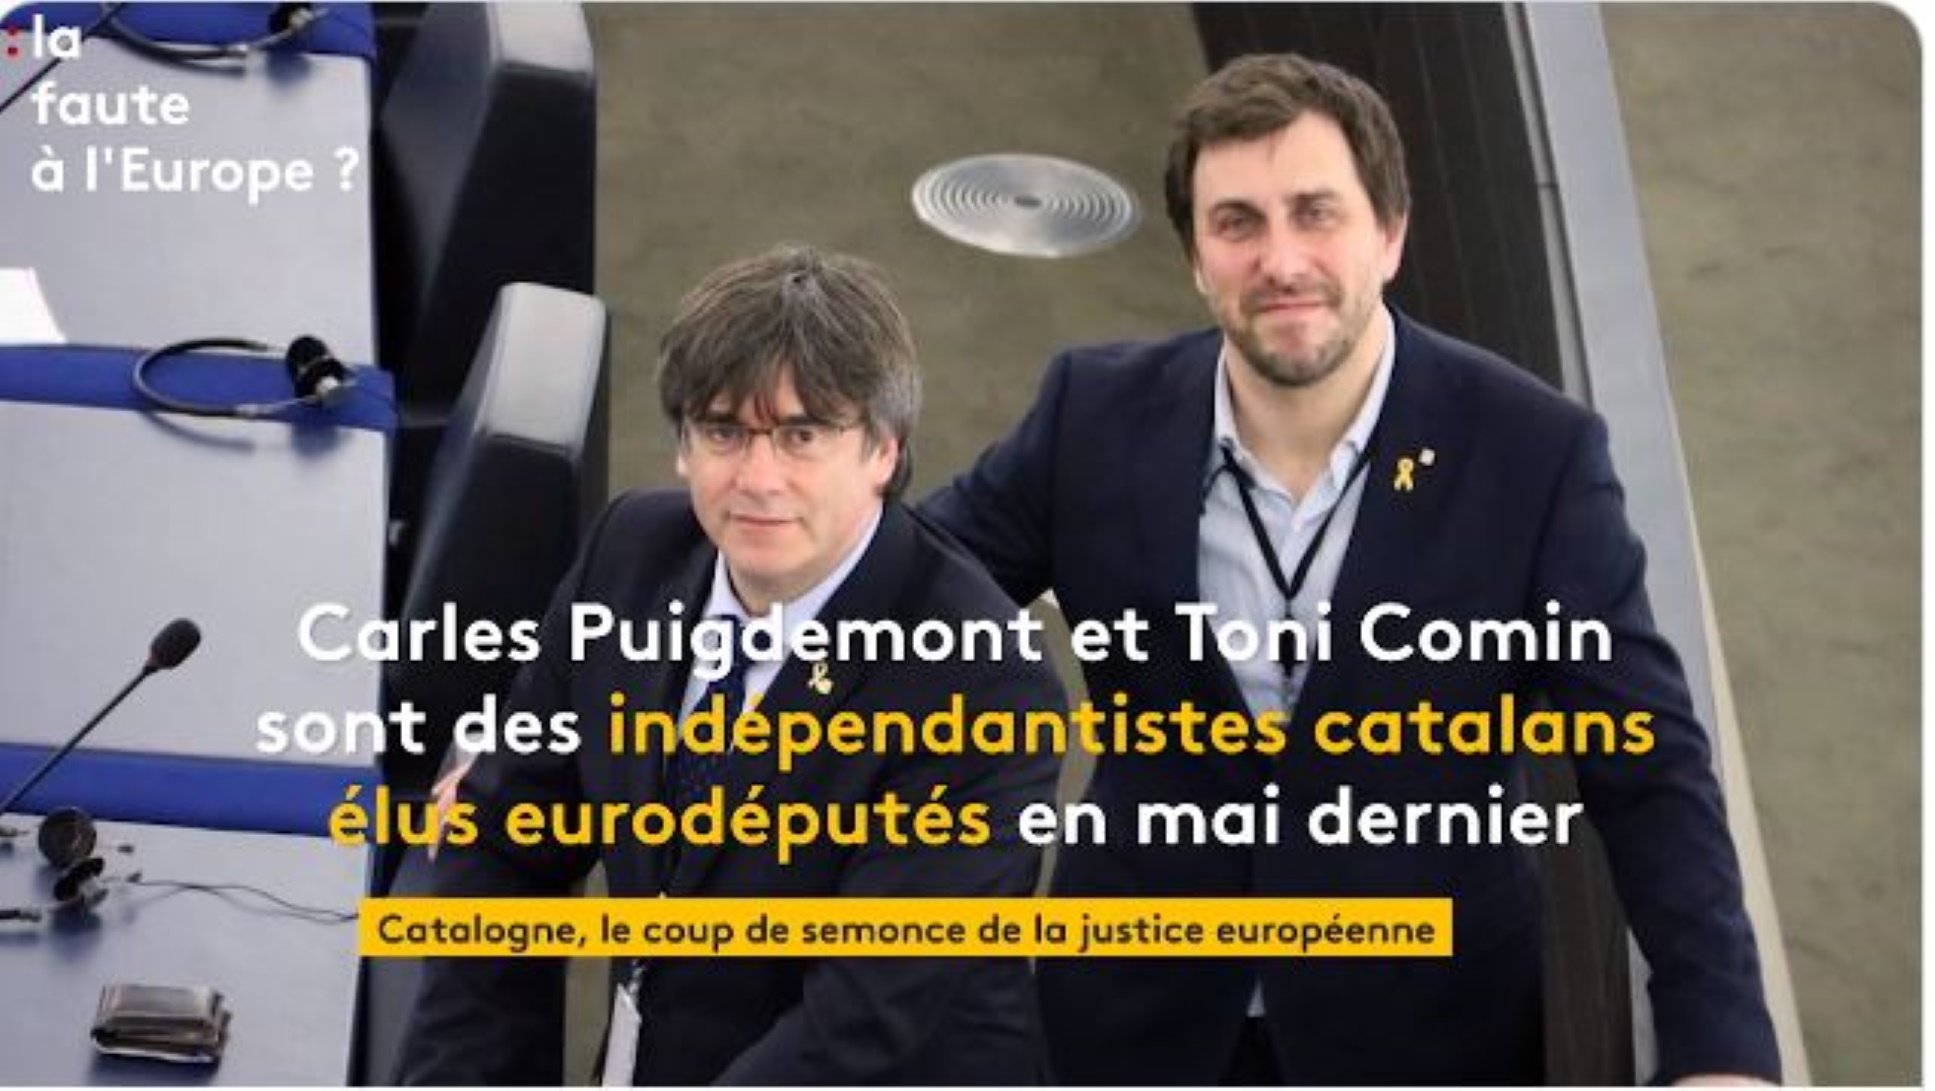 France Info segella així l'entrada de Catalunya al debat europeu